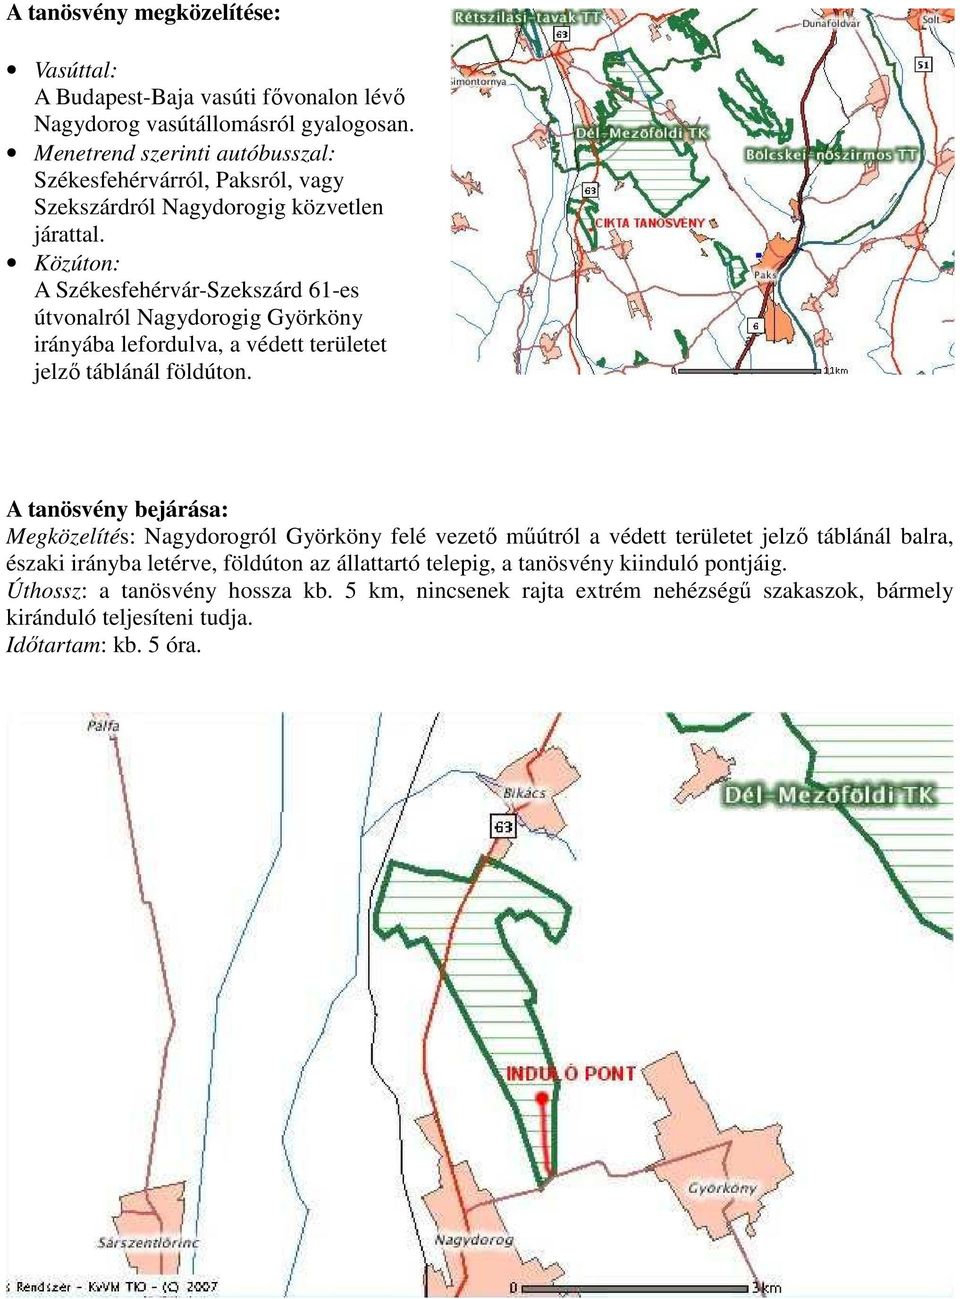 Közúton: A Székesfehérvár-Szekszárd 61-es útvonalról Nagydorogig Györköny irányába lefordulva, a védett területet jelzı táblánál földúton.